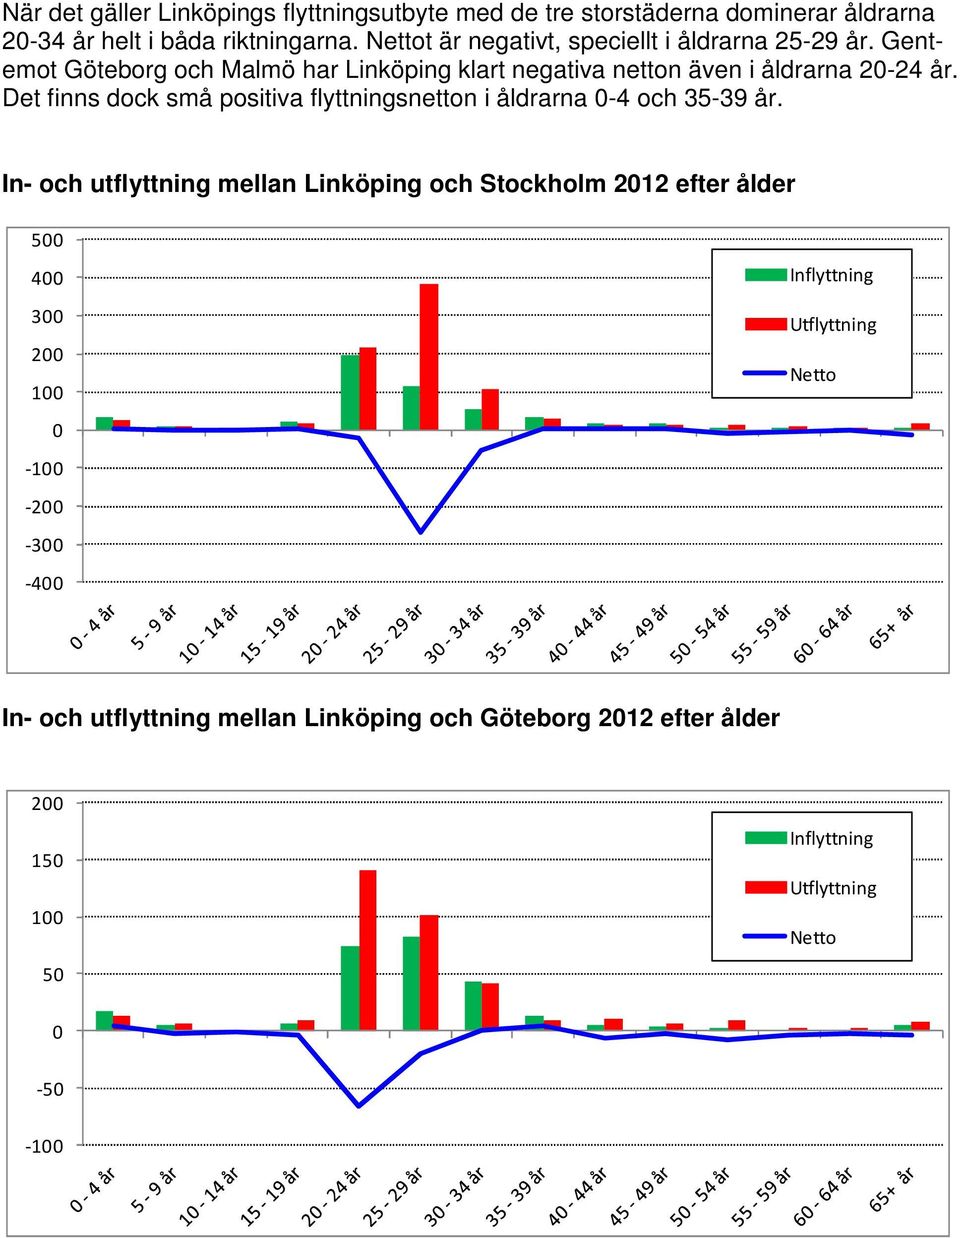 Gentemot Göteborg och Malmö har Linköping klart negativa netton även i åldrarna 2-24 år.